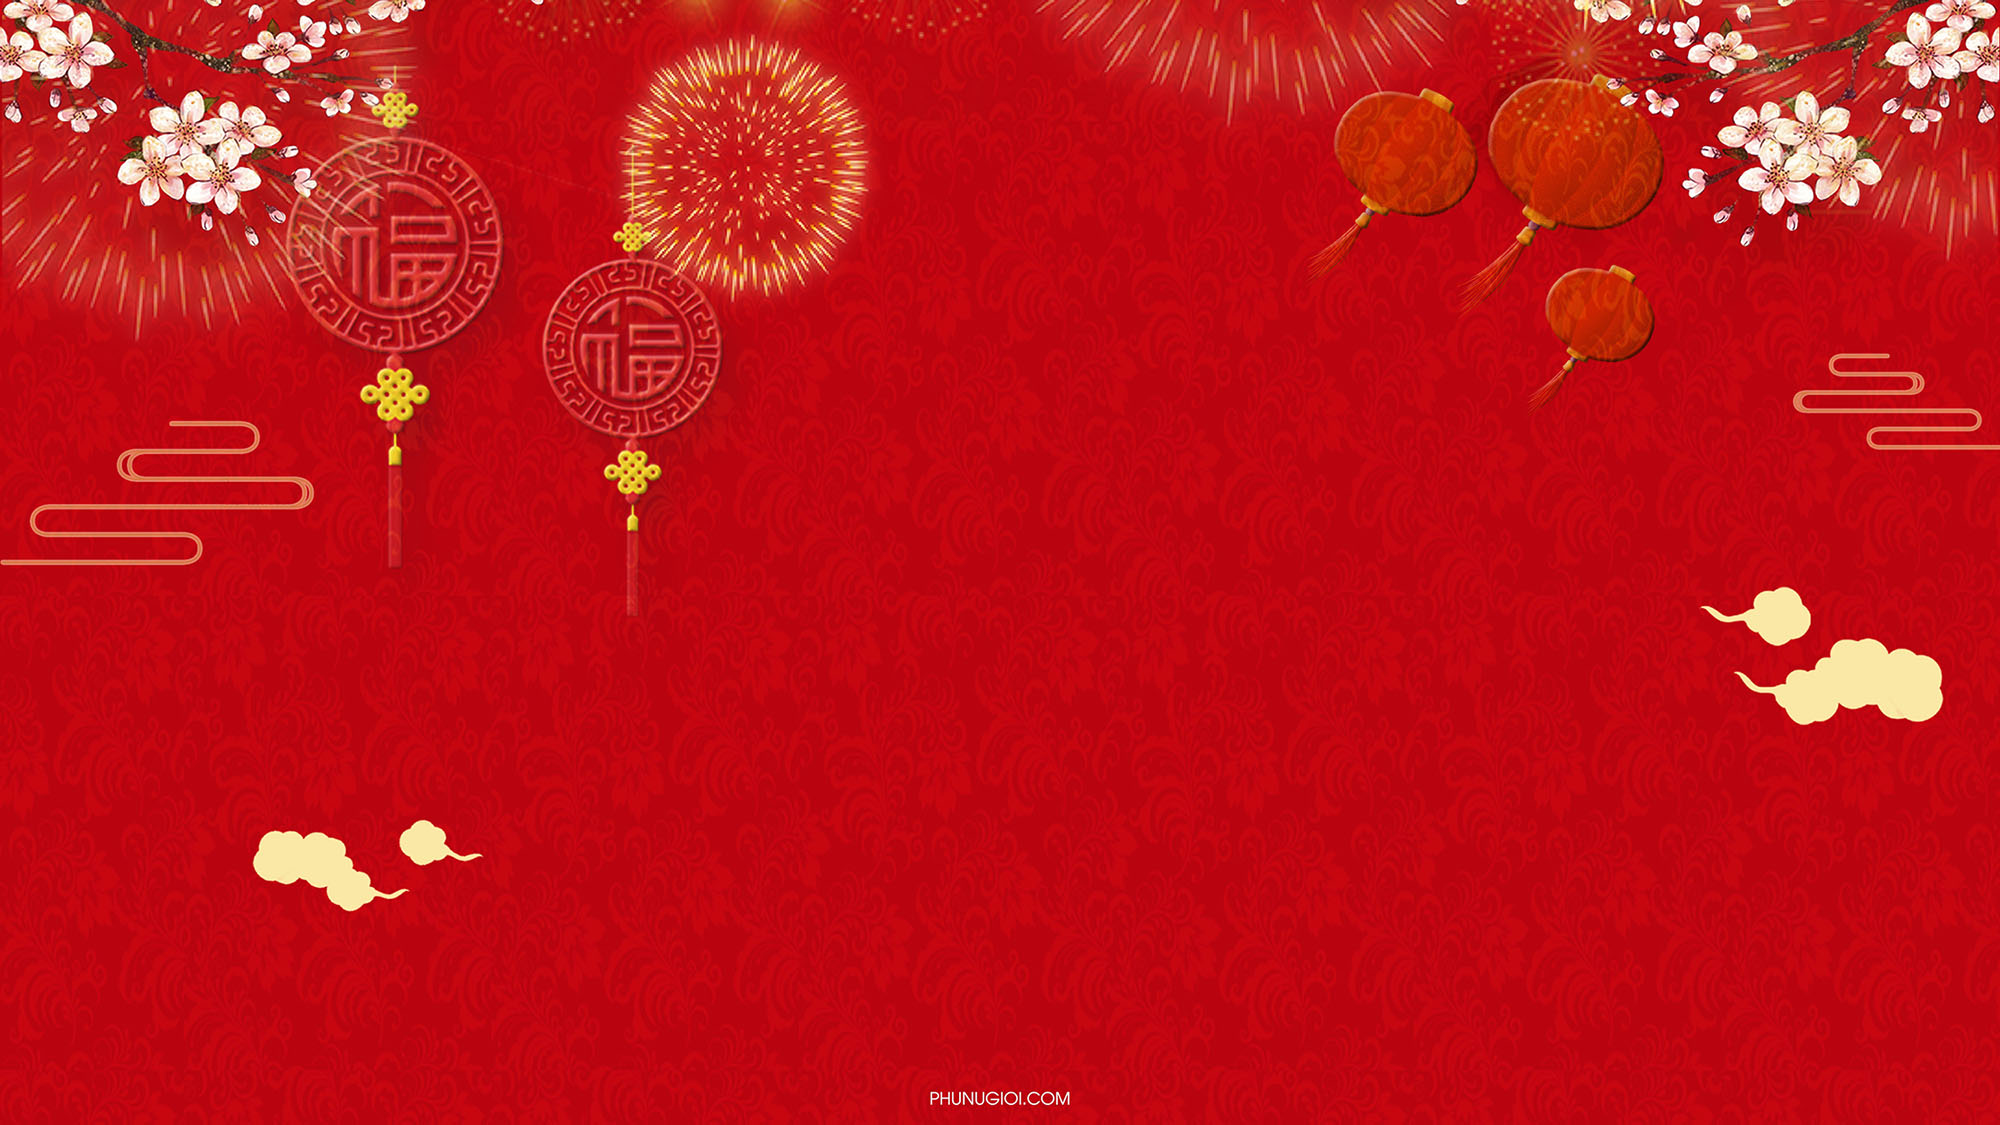 Background Tết nguyên đán đẹp đỏ rực rỡ nhiều may mắn - Background Tết đỏ rực rỡ: Những background Tết nguyên đán đỏ rực rỡ và nhiều may mắn sẽ mang lại cho bạn không khí rực rỡ và đầy sắc màu cho mùa lễ hội đặc biệt này. Hãy để mỗi bức ảnh của bạn thể hiện sự hạnh phúc và niềm vui trong dịp Tết đến Xuân về.